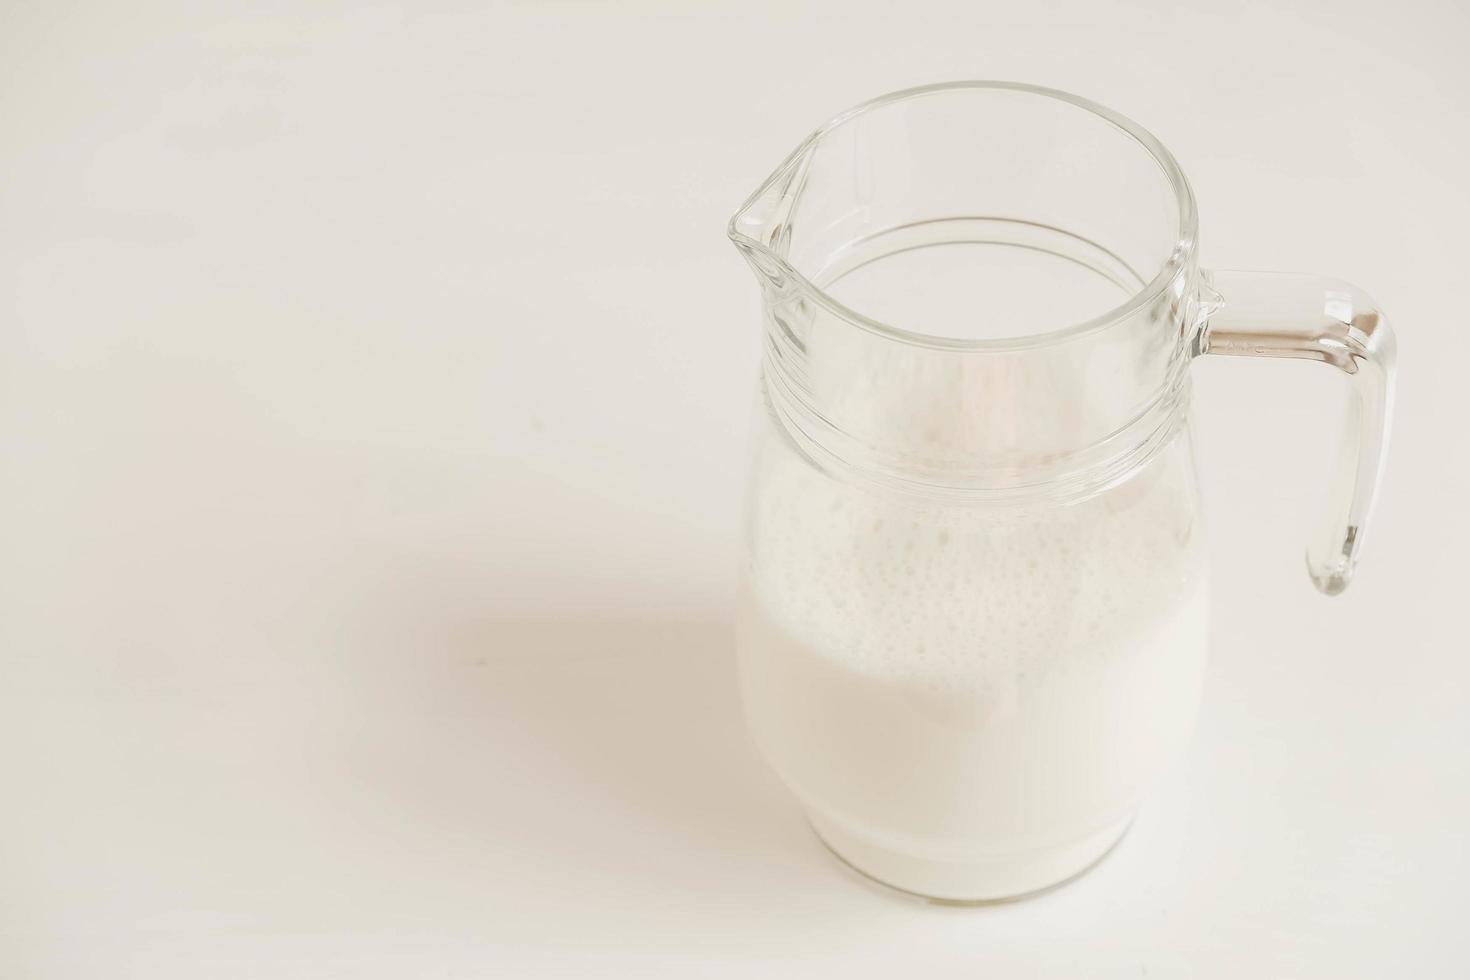 jarro de vidro com leite em uma mesa branca foto